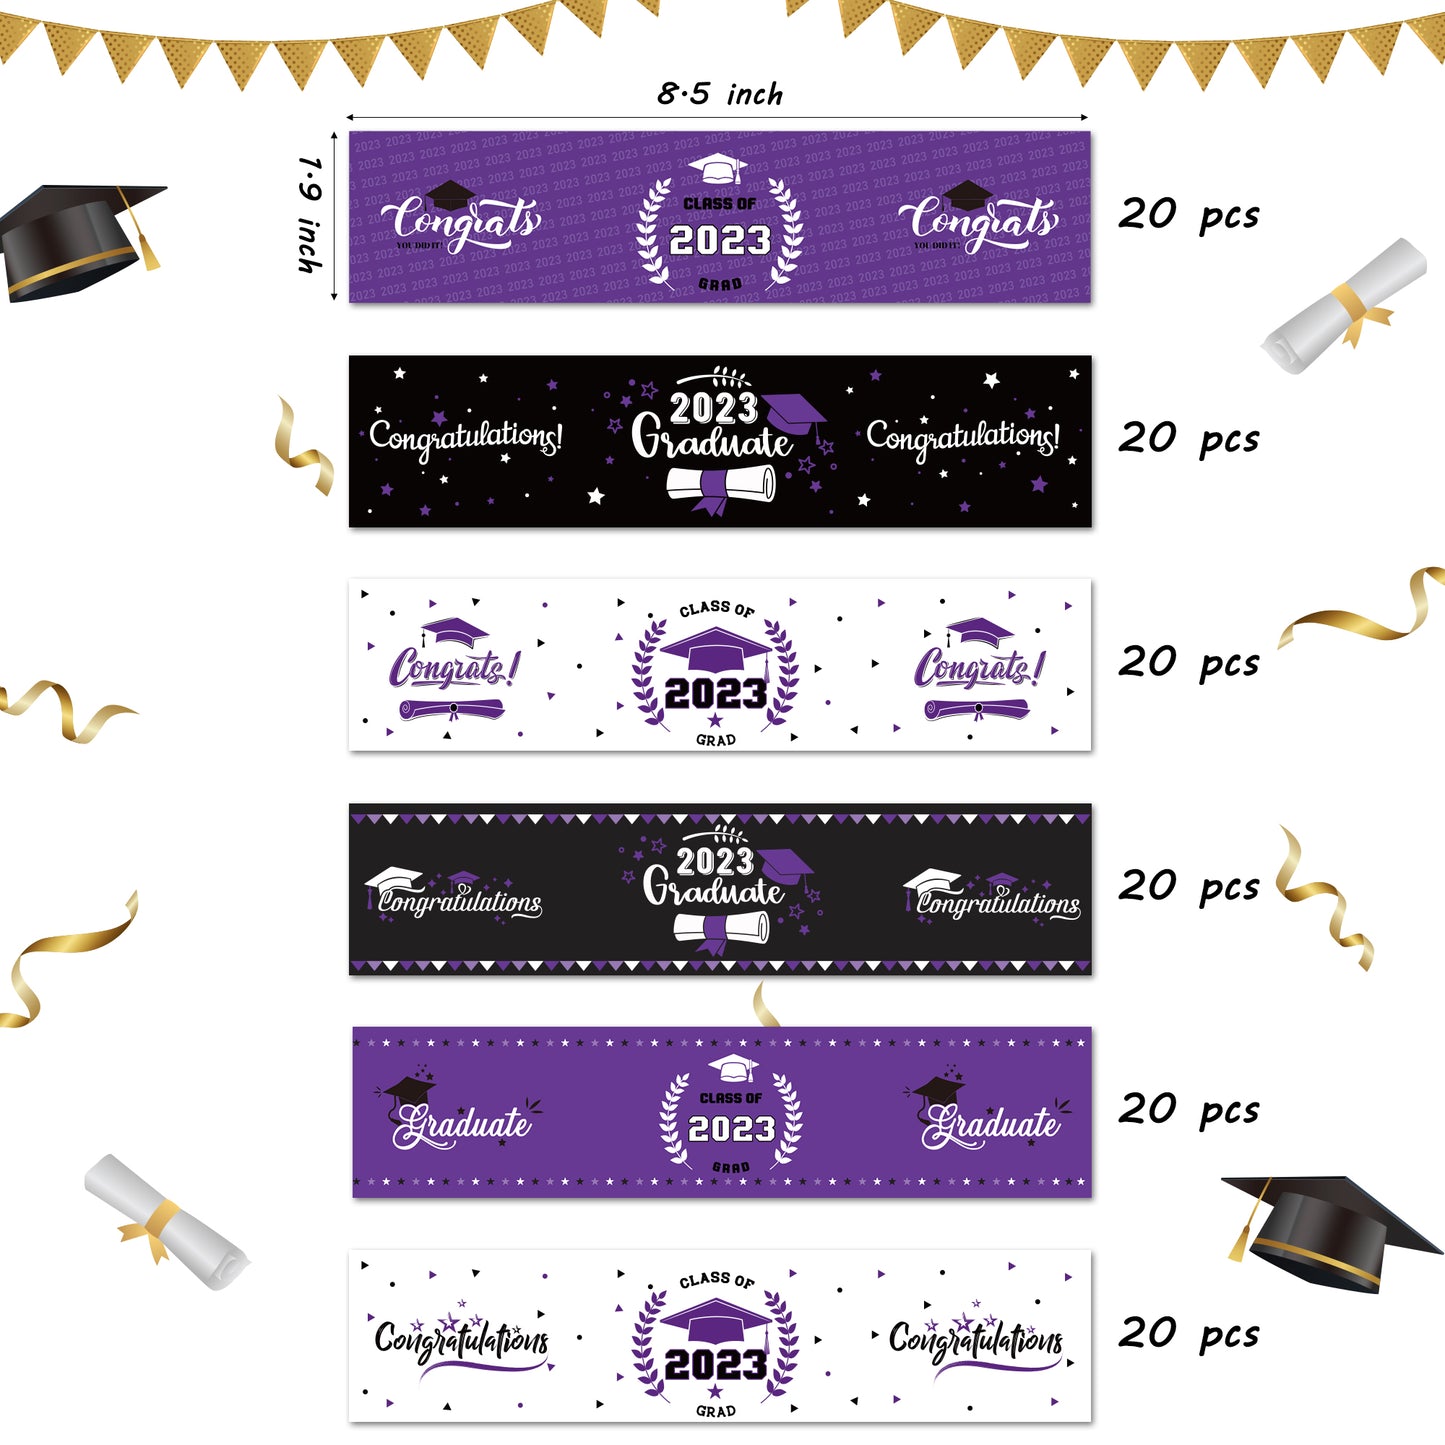 COcnny 120pcs Graduation Water Bottle Labels, Graduation Decoration Sticker Class of 2023 Congrats Grad Party Supplies, Bottle Wrapper Label Decor for High School College Graduate Celebration (Purple)